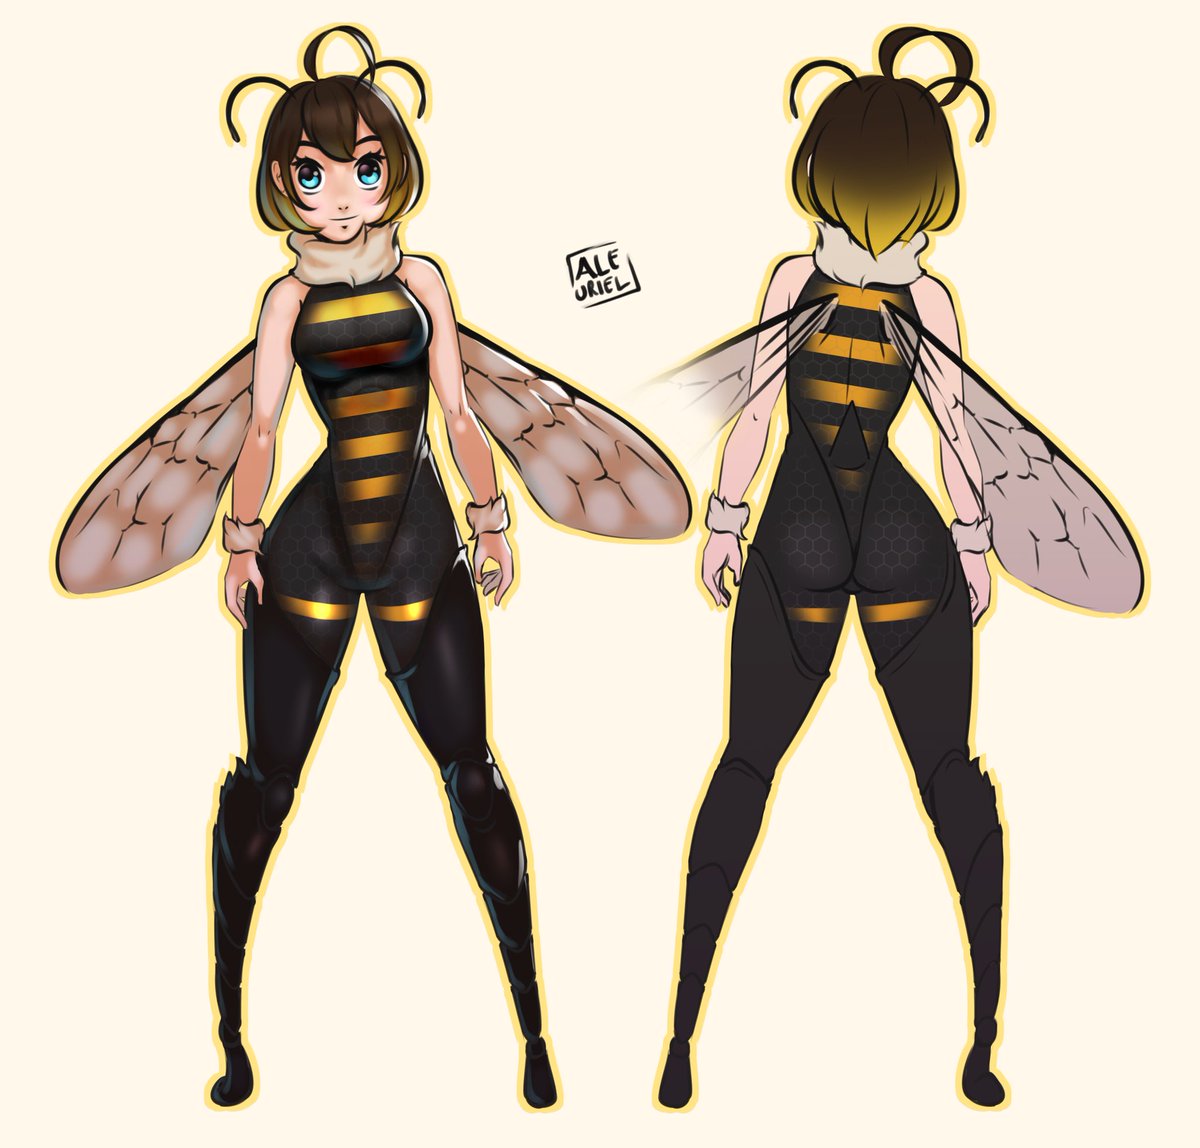 Bee Girl 🐝 #Illustrator #beegirl #Spring #abejita #characterdesign #characterart #charactersheet #diseñodepersonaje #kawaii #kawaiibee